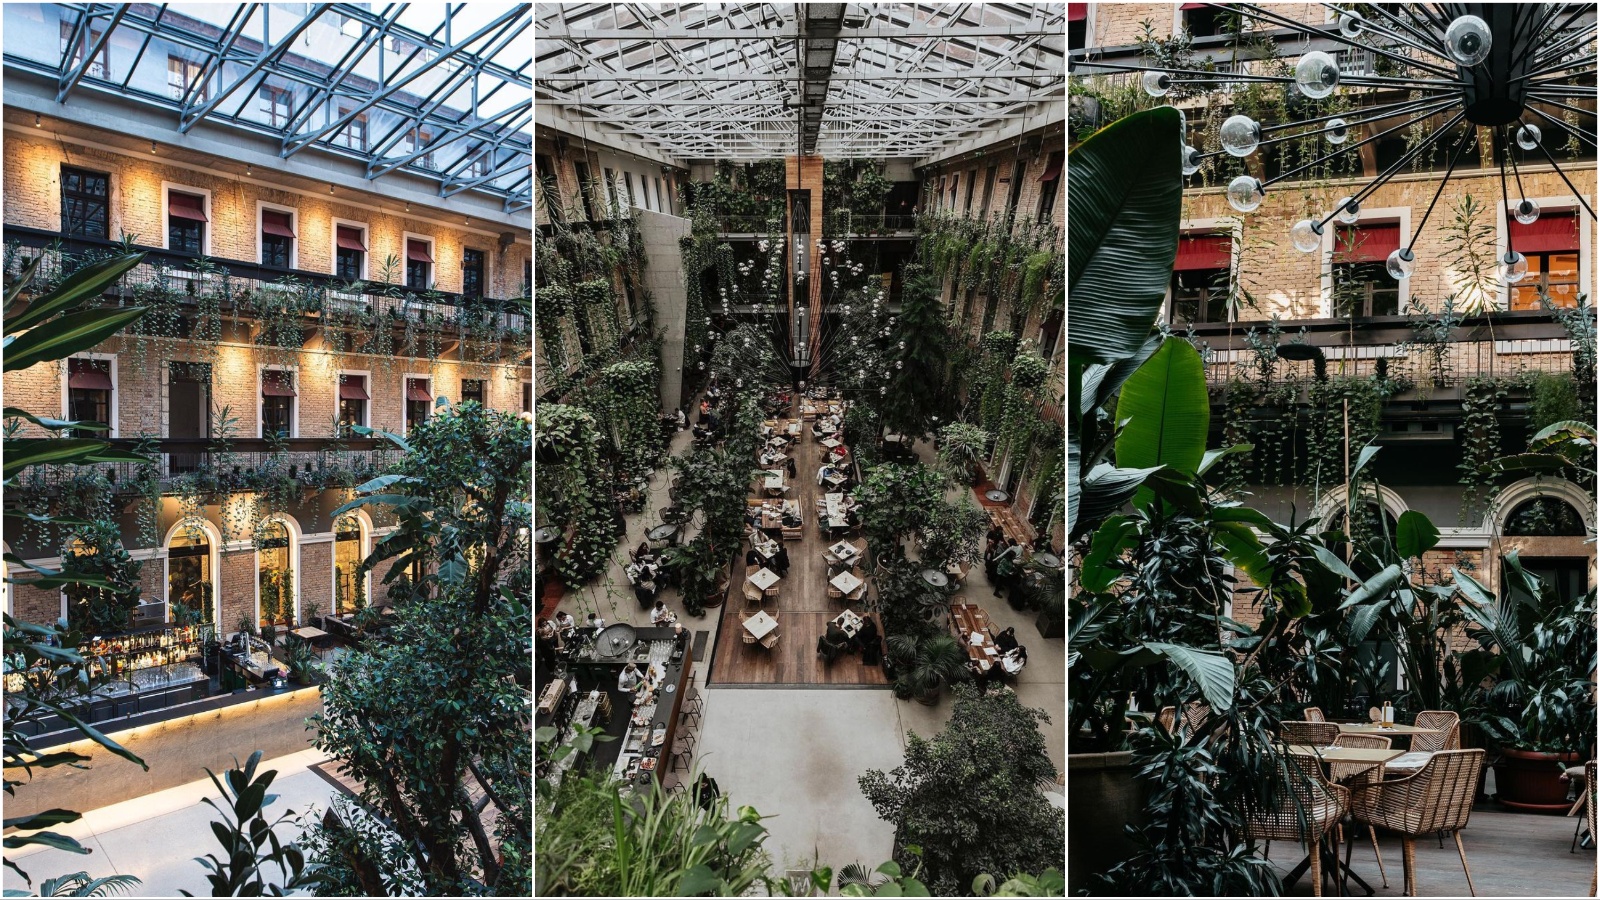 Welcome To The Jungle: Mjesto u Budimpešti koje je osvojilo Instagram